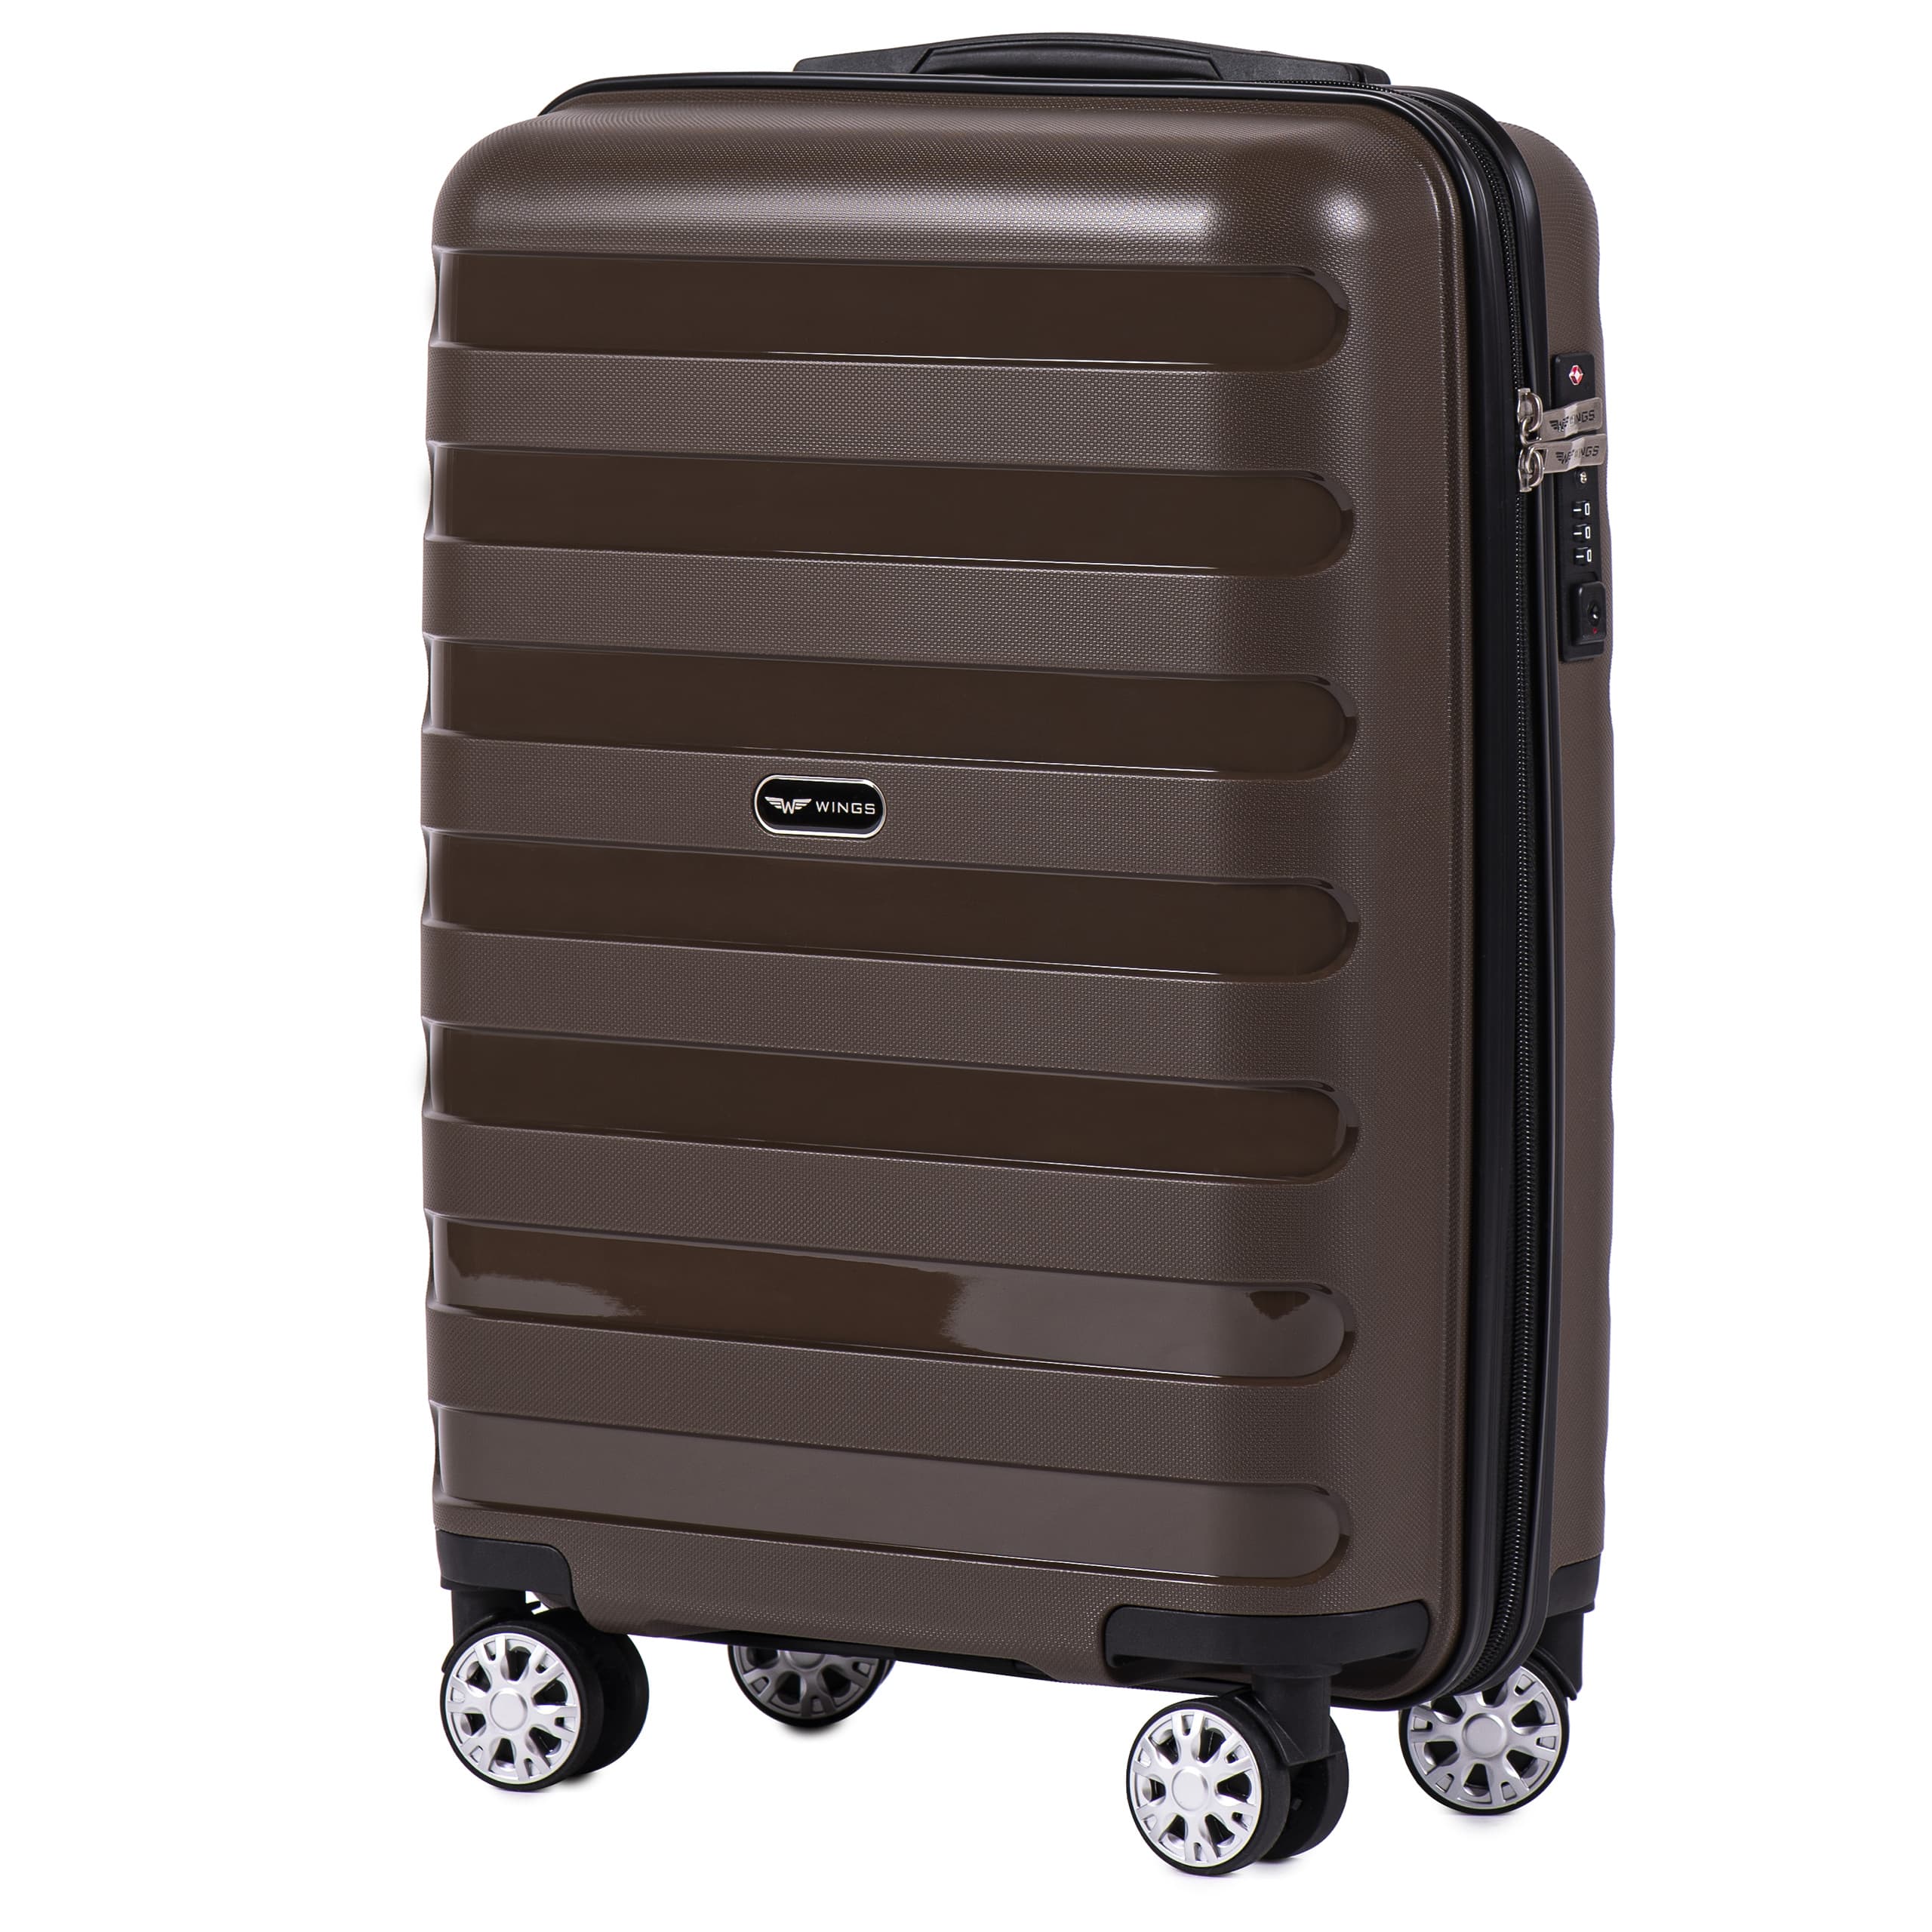 Маленький чемодан для ручной клади WINGS Prime S PP-07 Cooper! ДЛЯ 7-10 кг! - 3